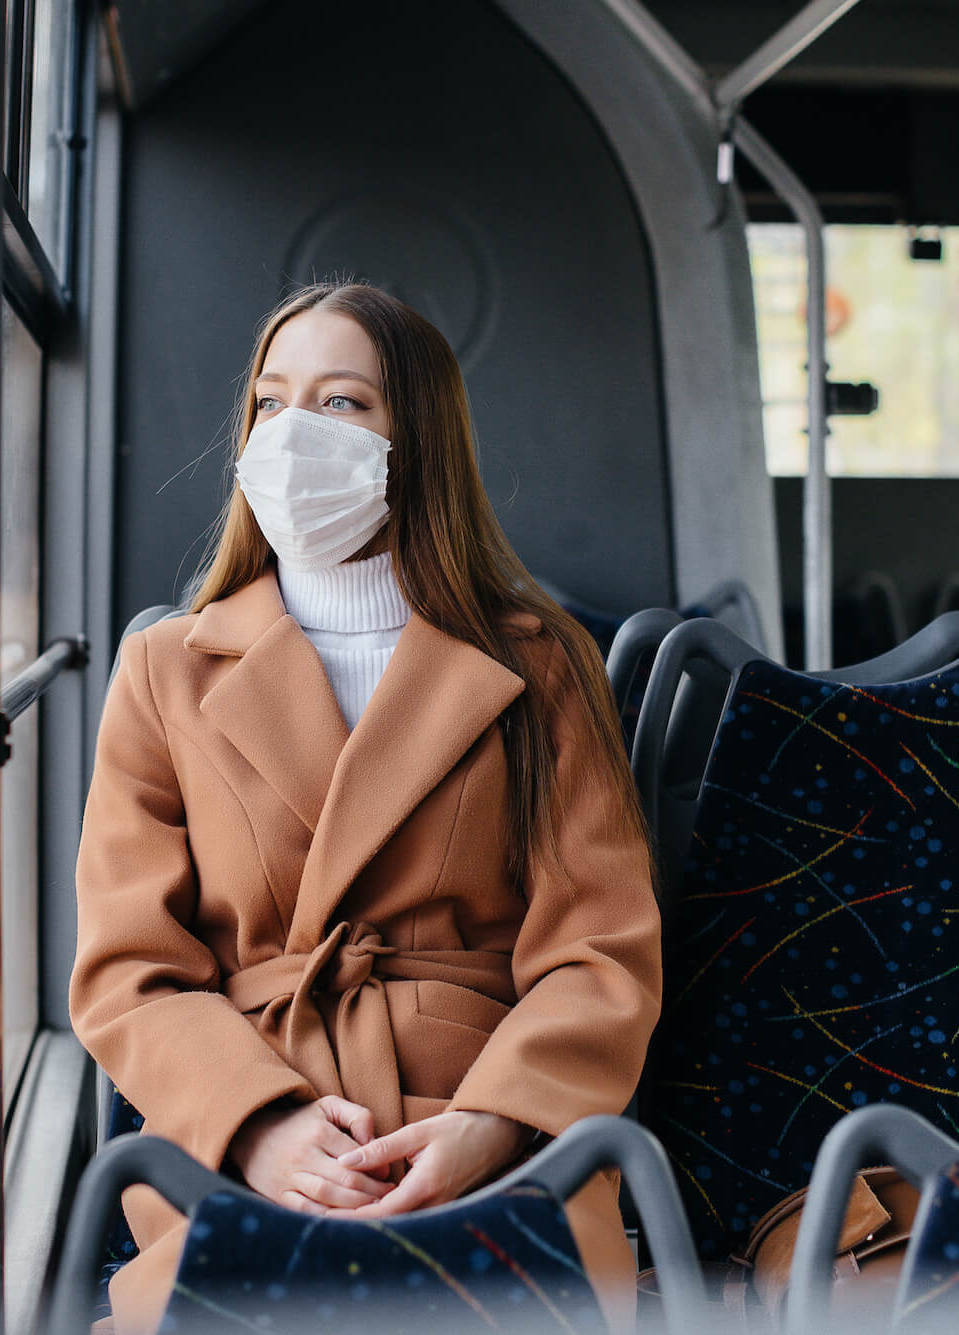 Frau mit Maske sitzt im Bus